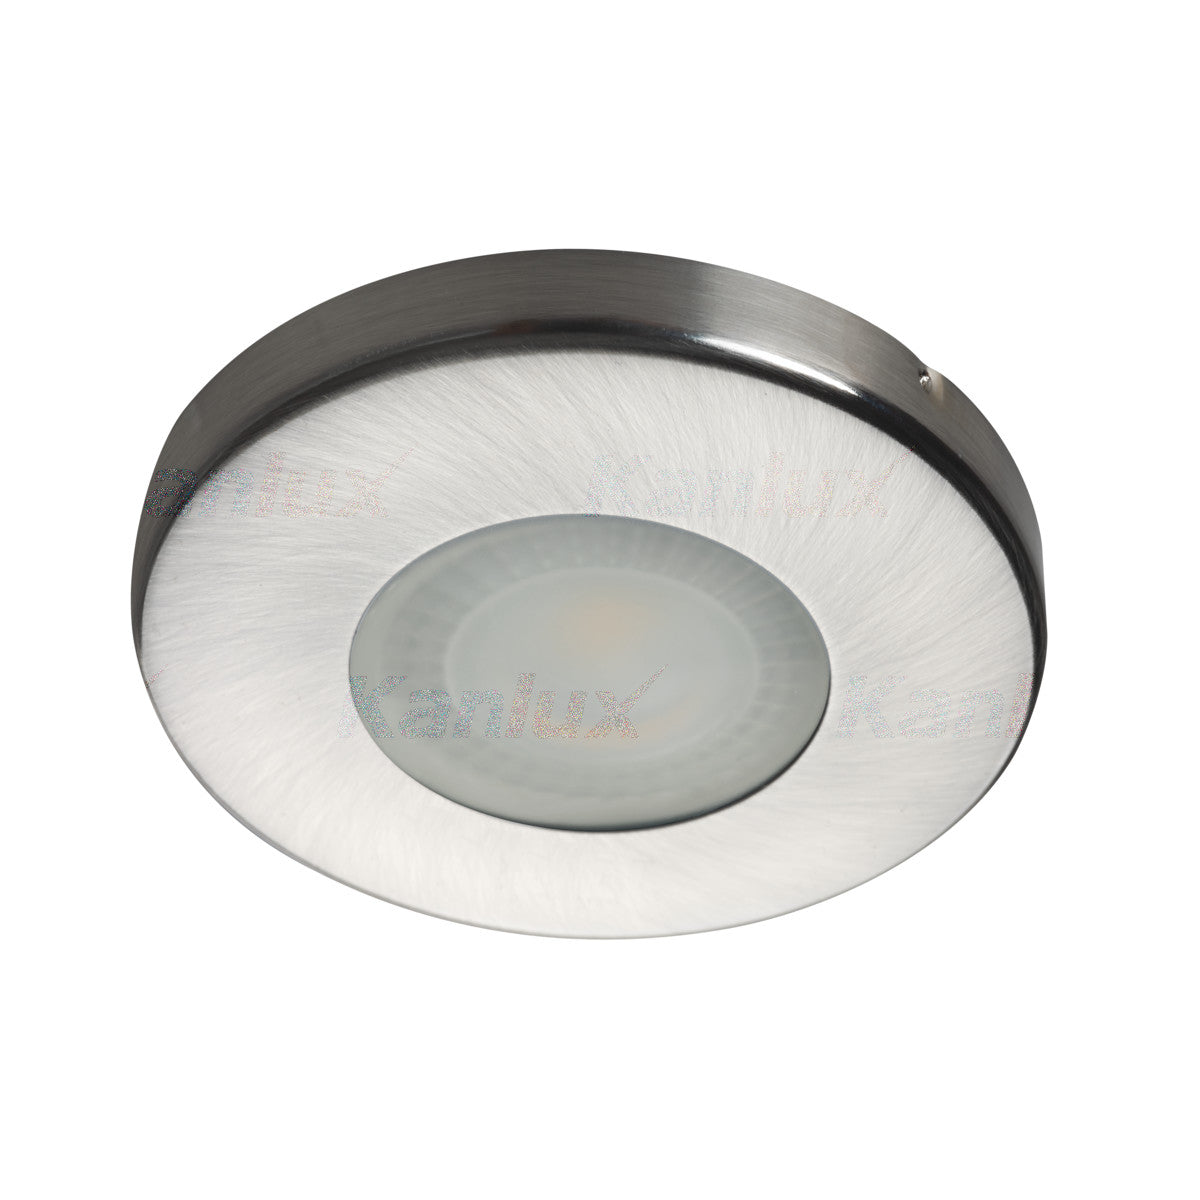 Kanlux MARIN IP44 GU10 Ceiling Recessed Round Mounted Spotlight Downlight Bathroom Kitchen